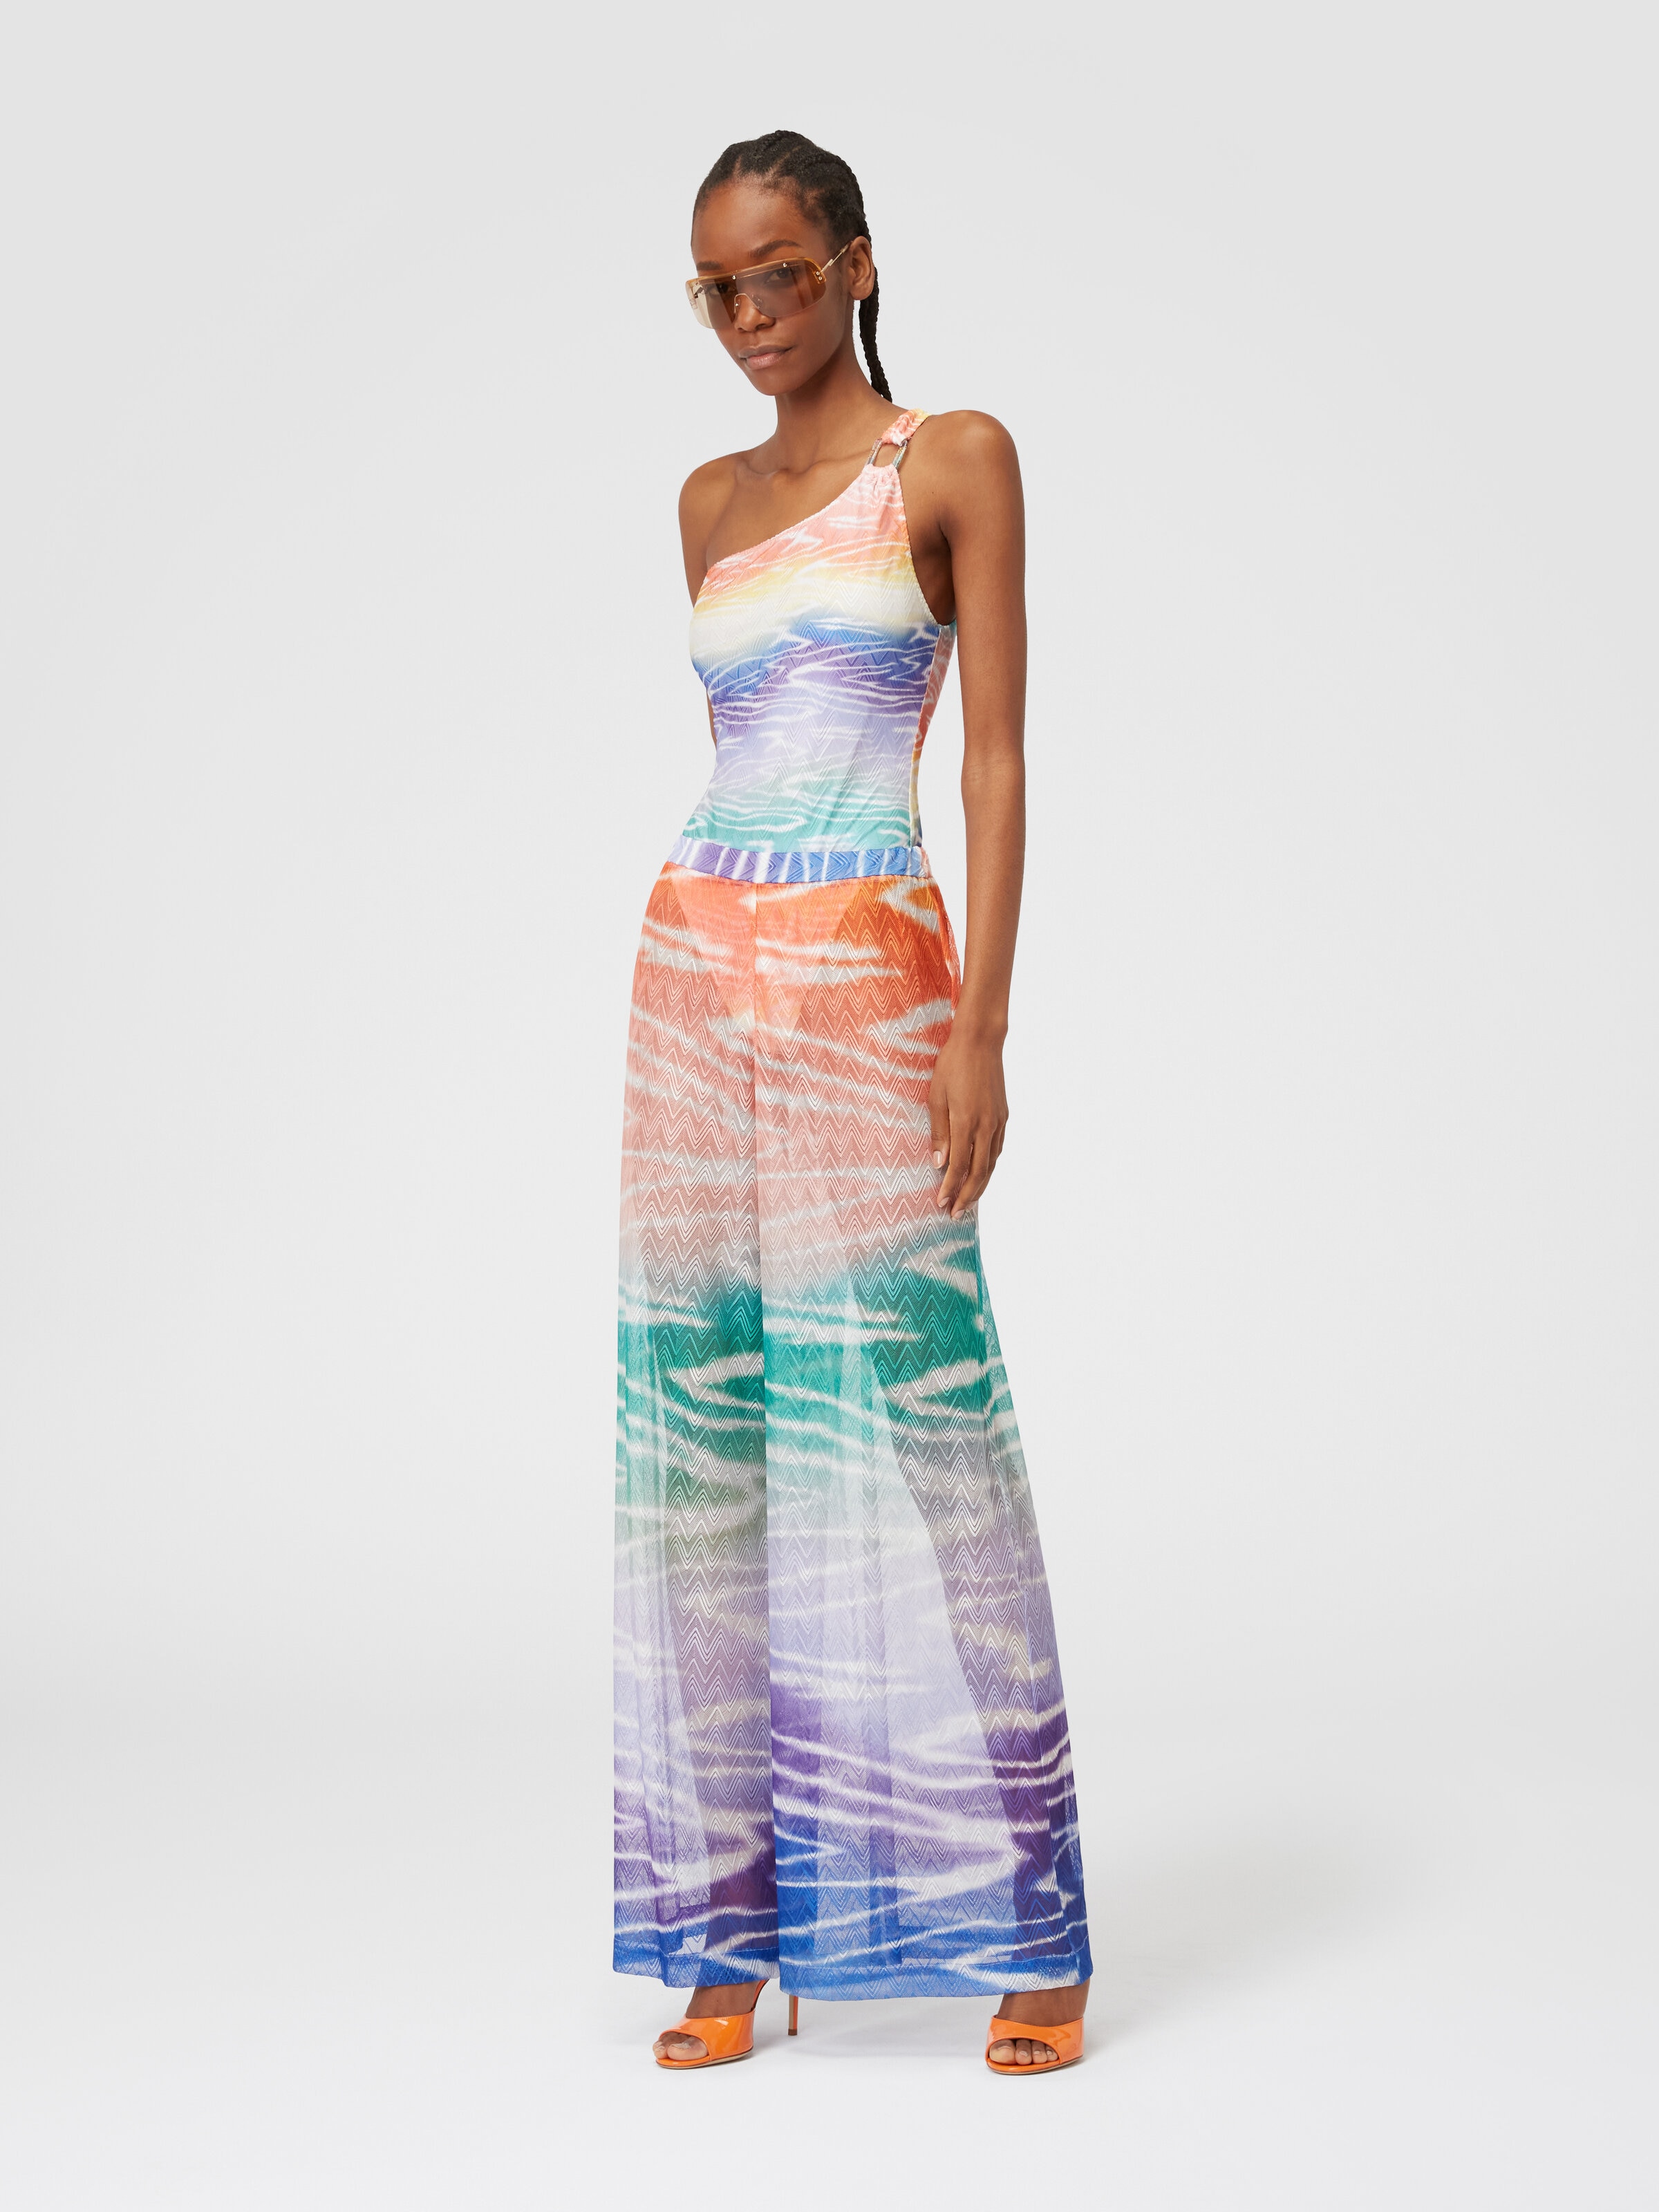 Hose zum Überziehen am Strand mit Tie-Dye-Print, Mehrfarbig  - 1